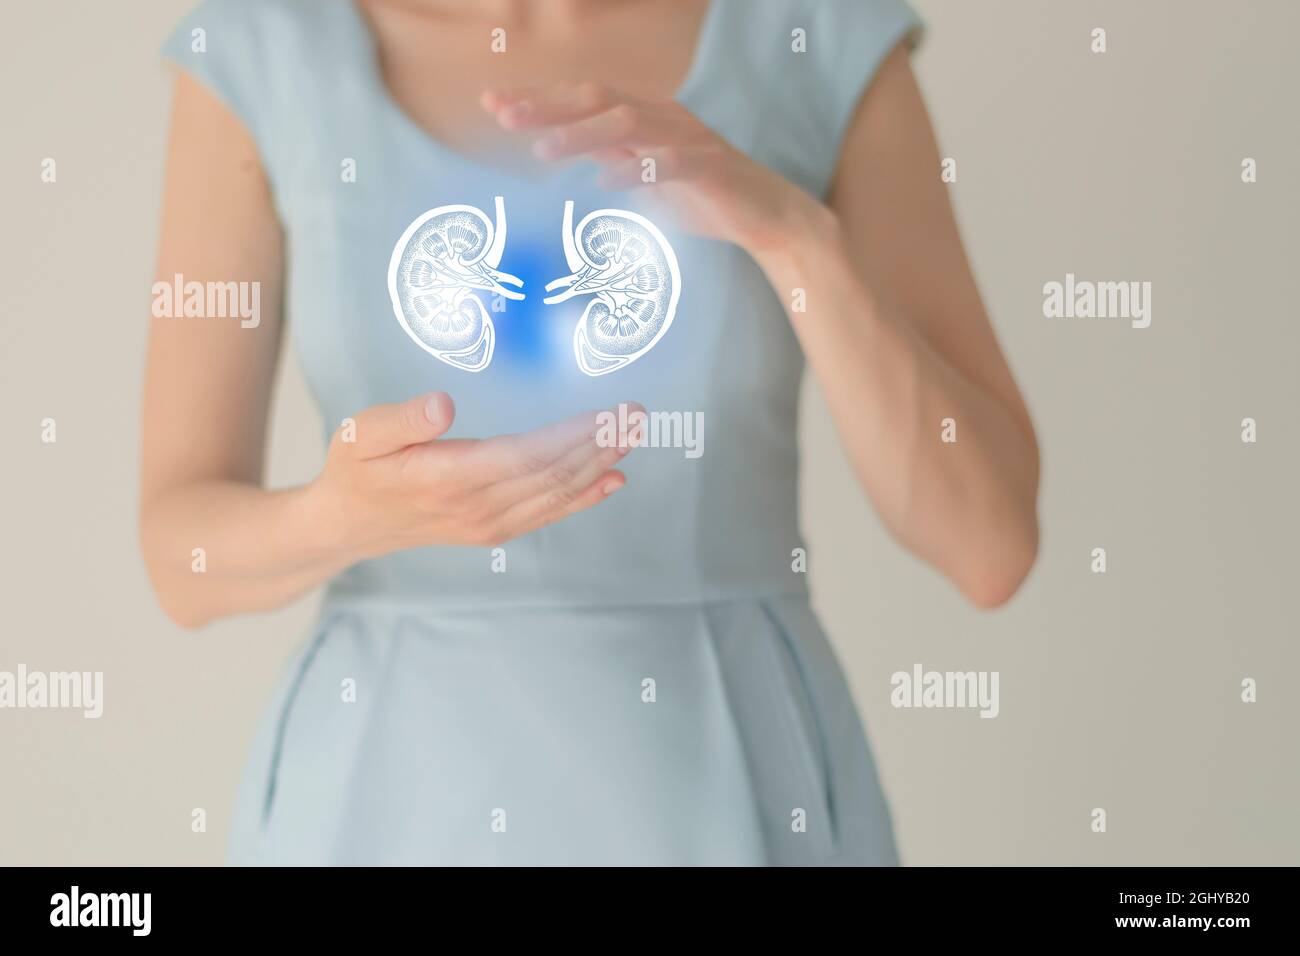 Nicht erkennbare weibliche Patientin in blauer Kleidung, hervorgehobene, von Hand gezeichnete Niere in den Händen. Das menschliche Nierensystem stellt ein Konzept dar. Stockfoto